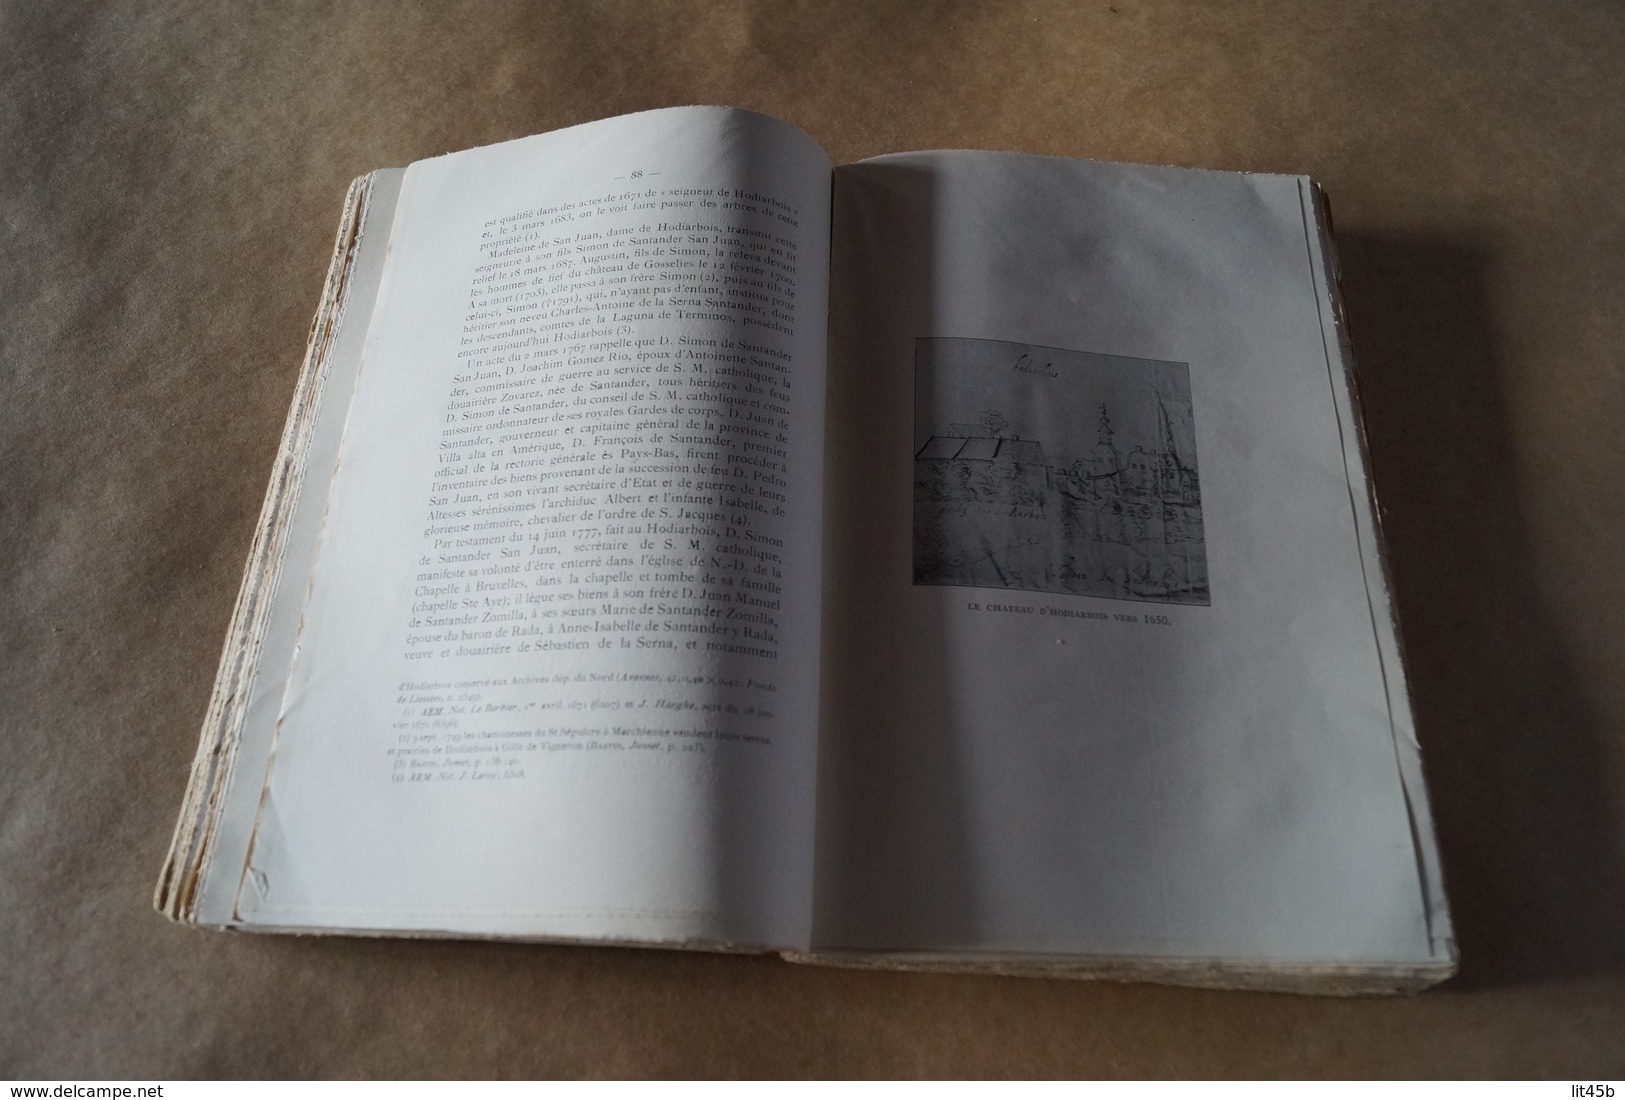 Ville de Gosselies 1926,recherche historique,Dom Ursmer Berlière,carte du 18 iem Siècle,325 pages,25 Cm./16.5 Cm.complet